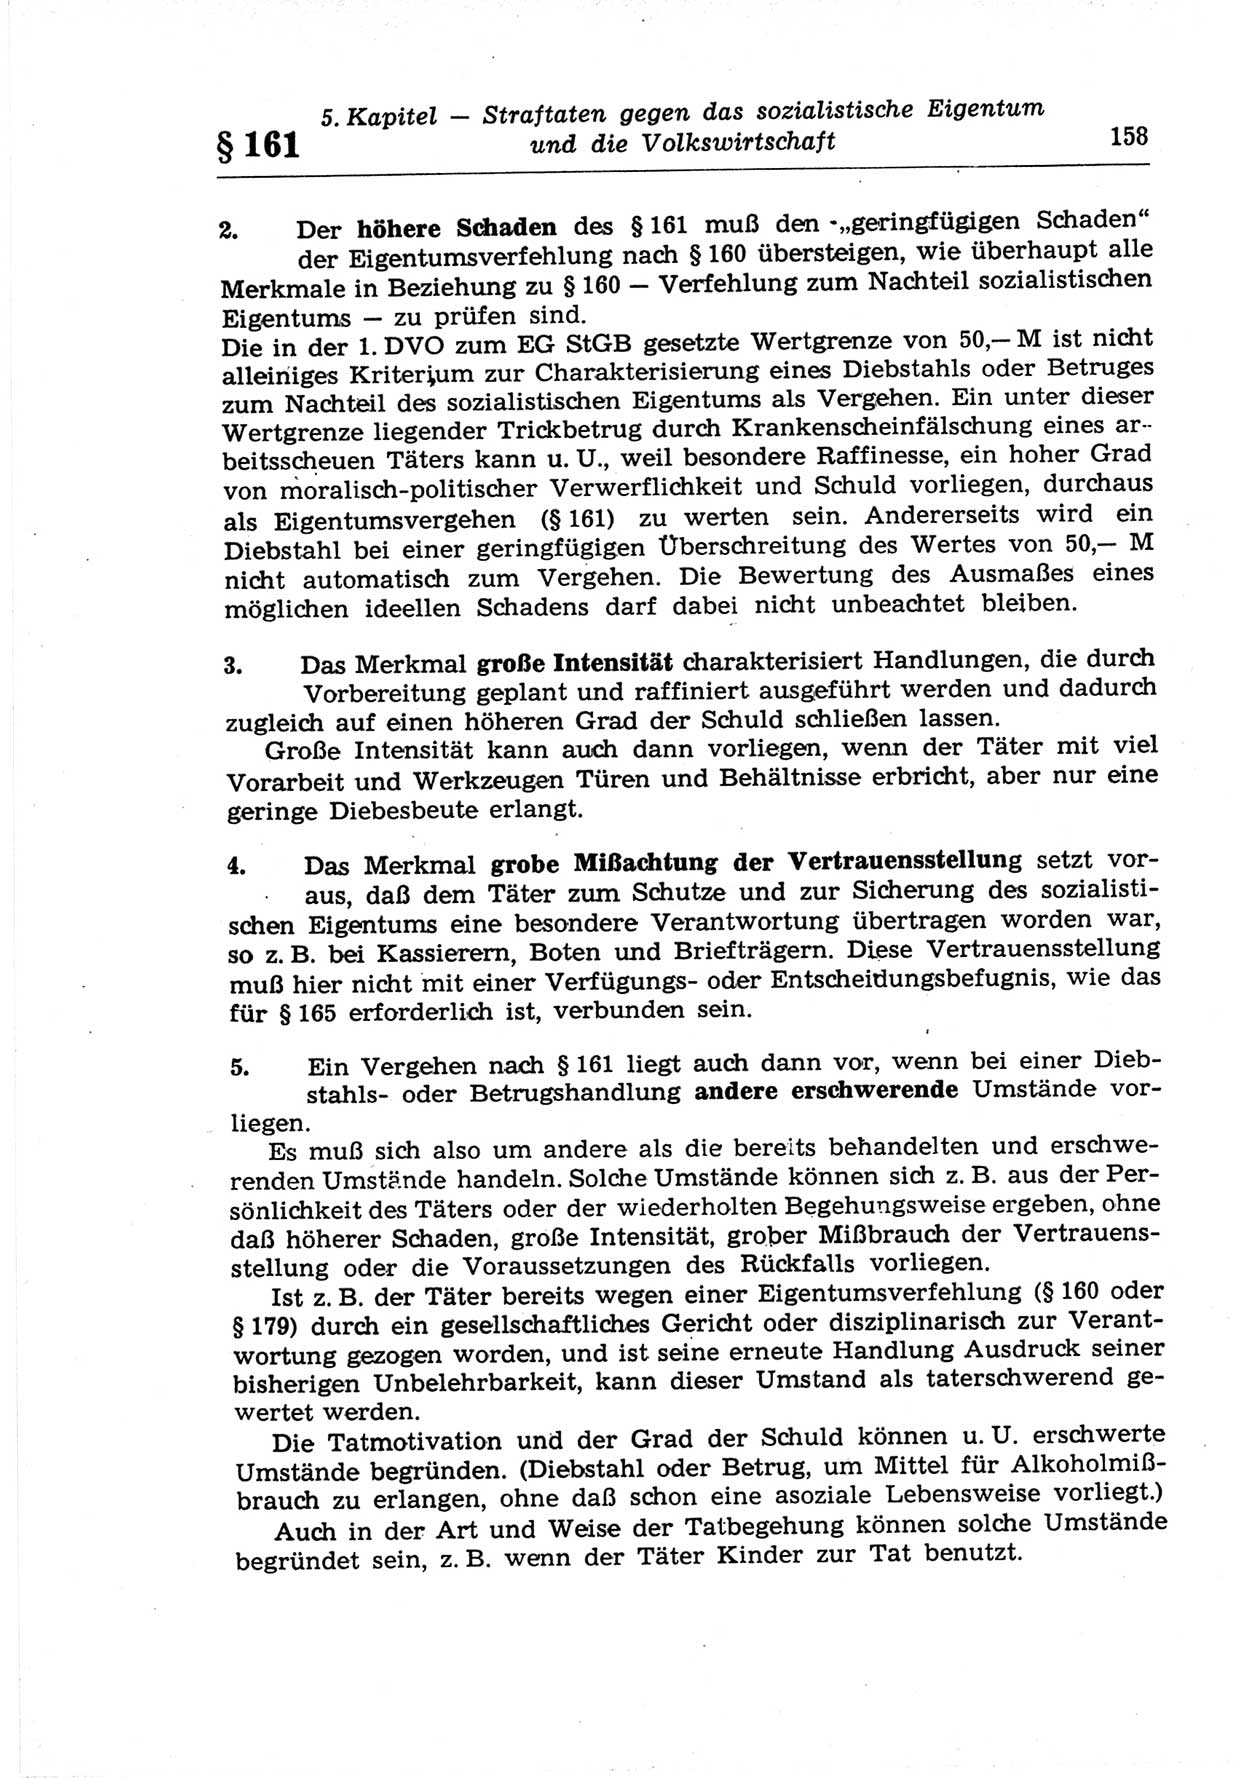 Strafrecht der Deutschen Demokratischen Republik (DDR), Lehrkommentar zum Strafgesetzbuch (StGB), Besonderer Teil 1969, Seite 158 (Strafr. DDR Lehrkomm. StGB BT 1969, S. 158)